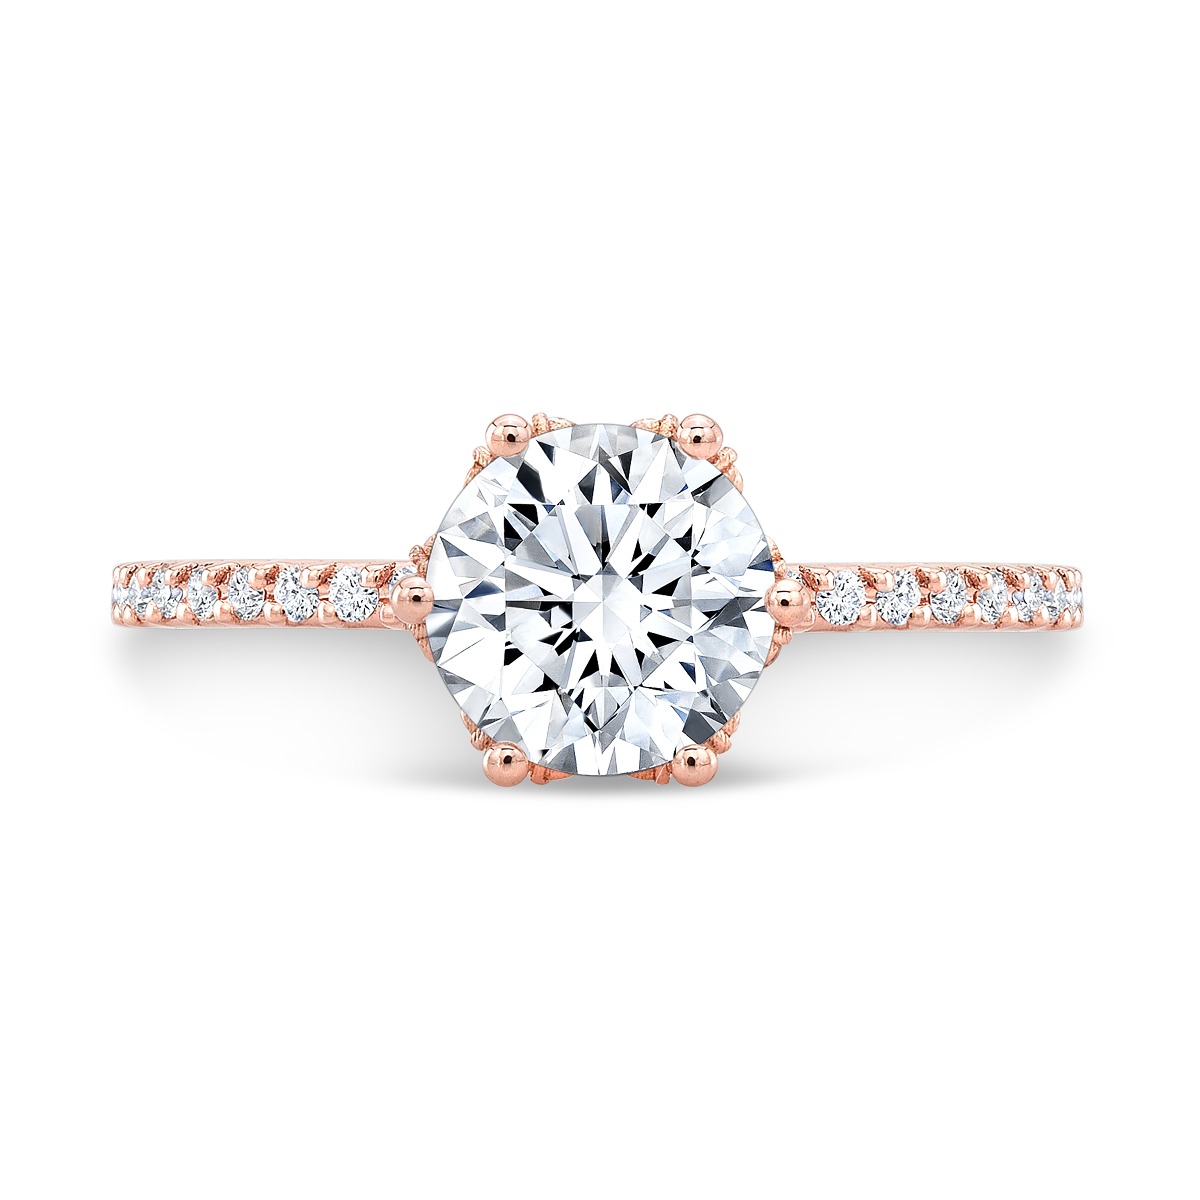 Unique Hidden Halo Pave Diamond Engagement Ring